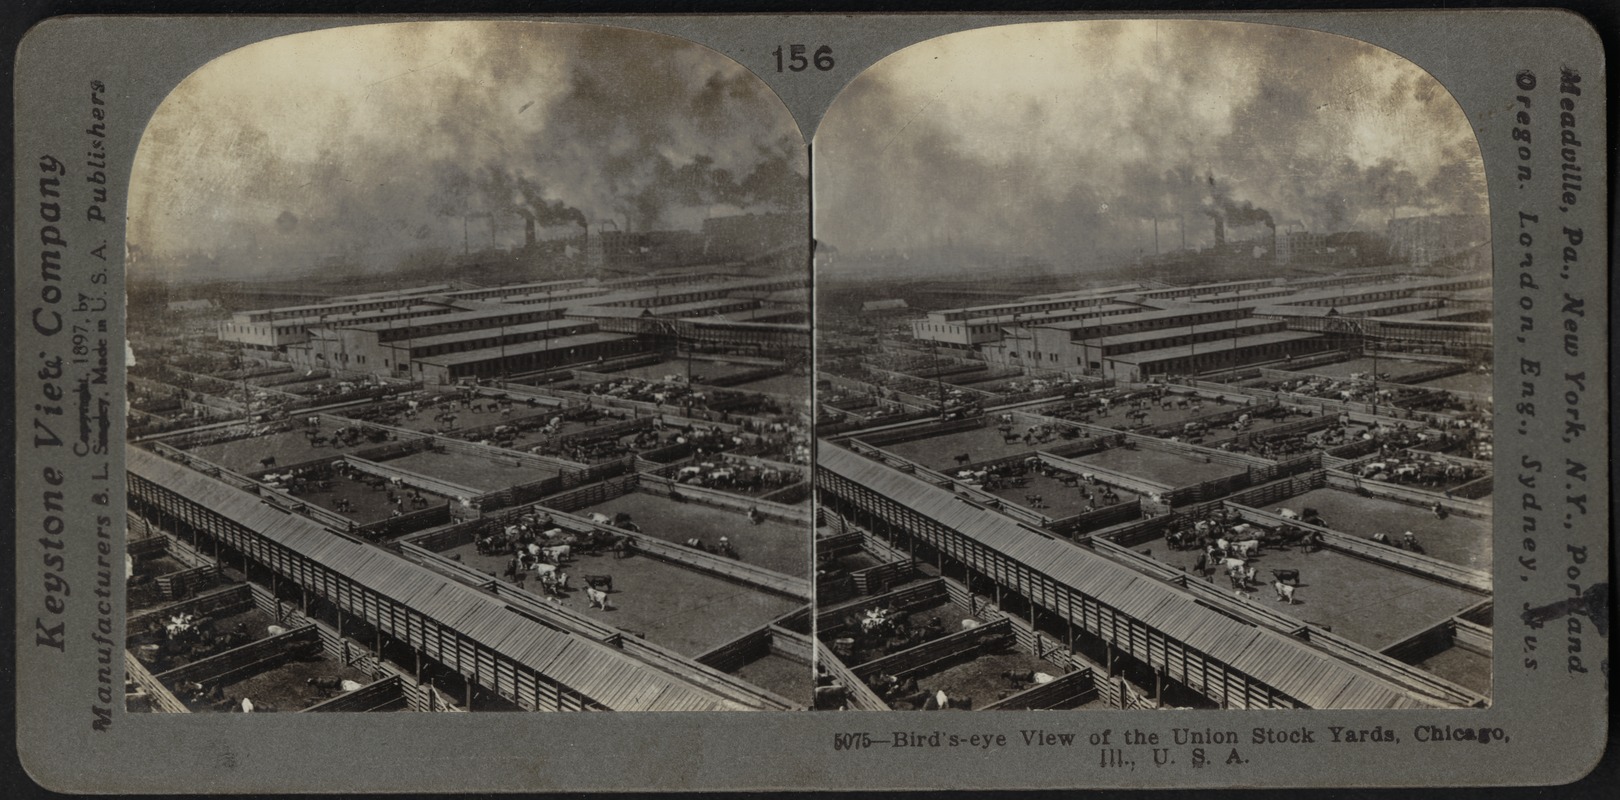 Union stockyards, bird's-eye view, Chicago, Illinois